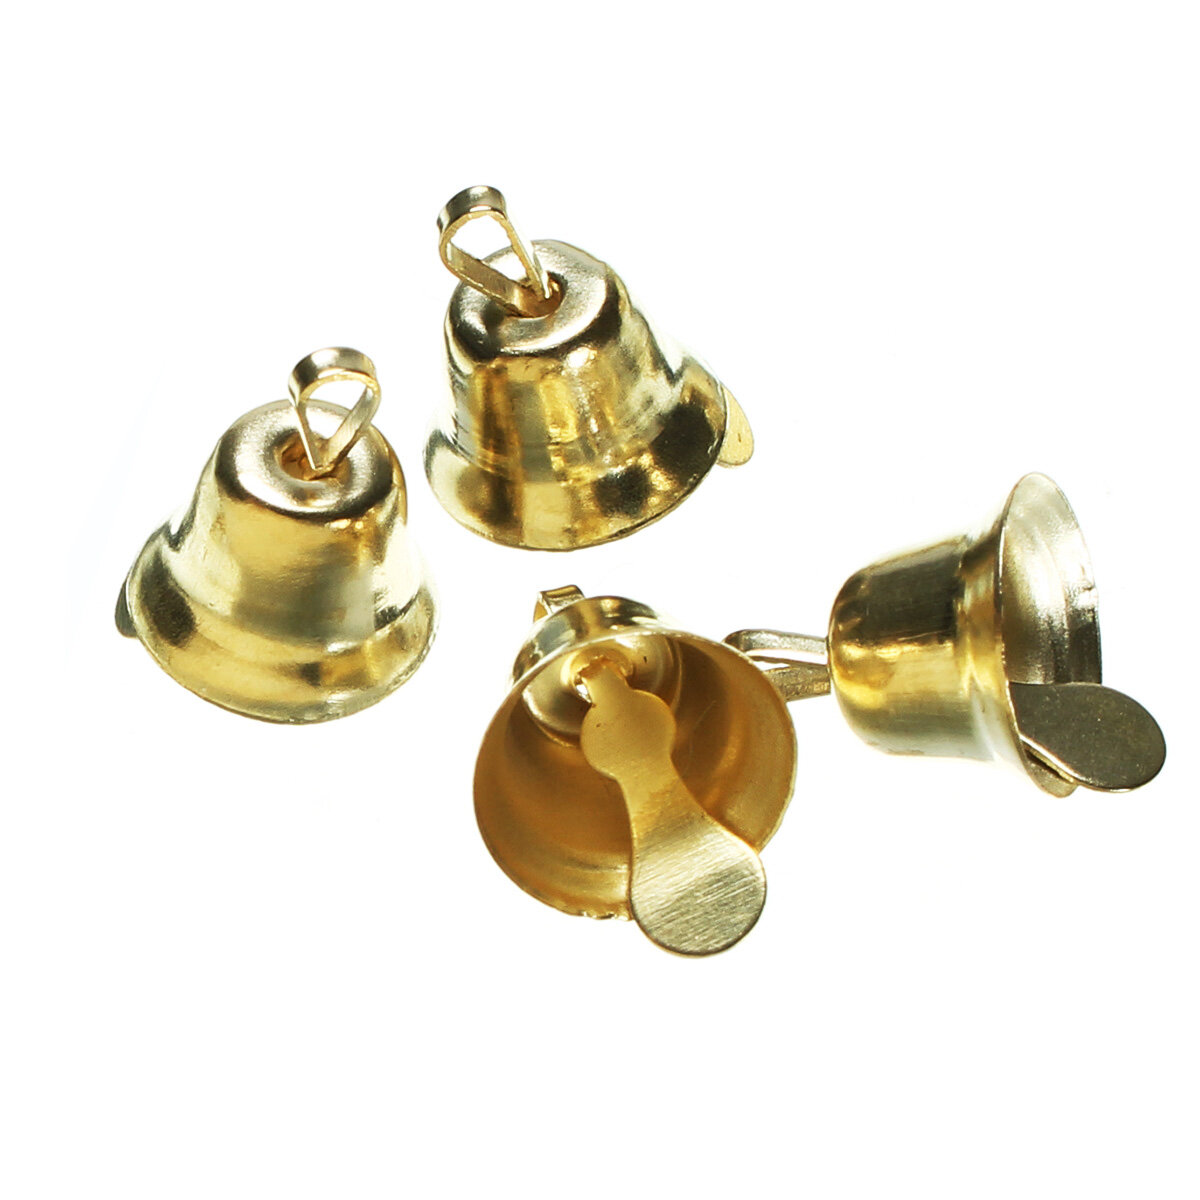 120 stks Metalen Bel Set Gouden Mini Ring Bel Sieraden Hangers Wind Chime Kerstboom Decoratie Access